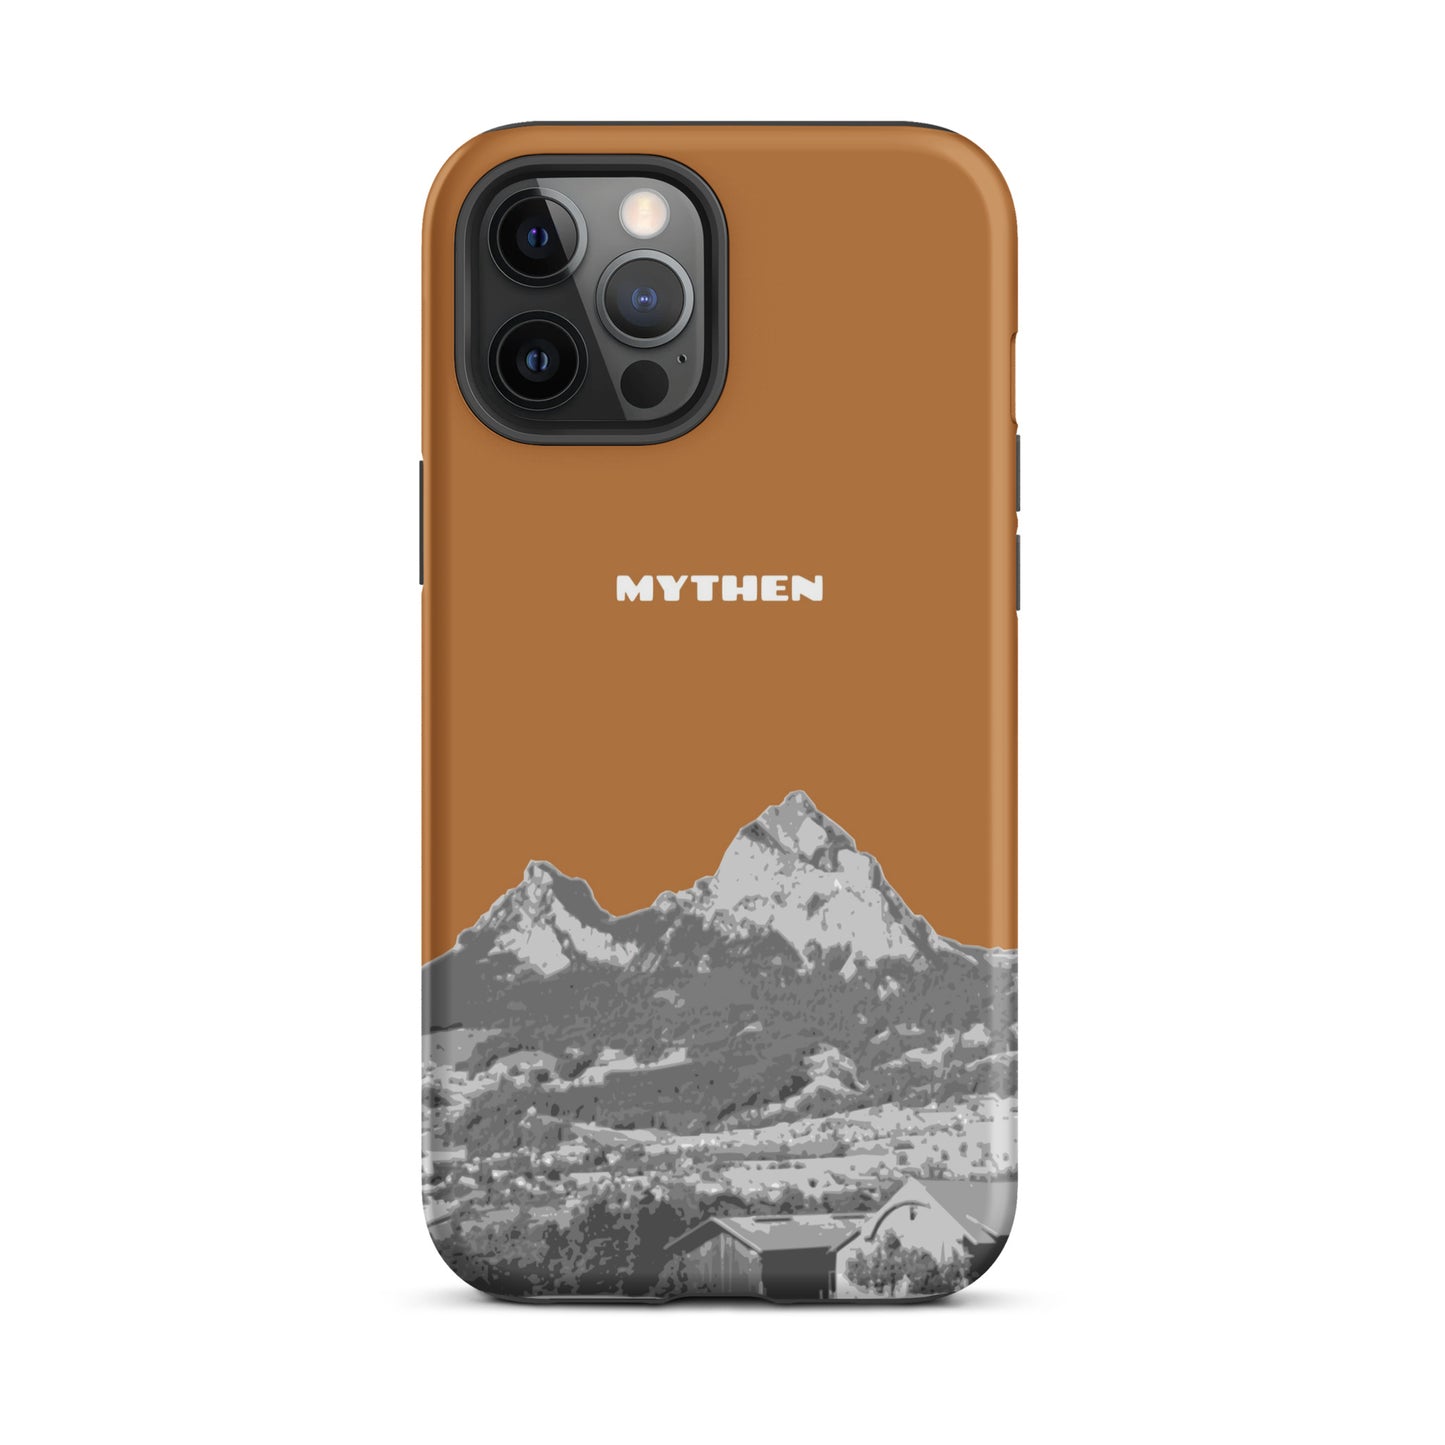 Hülle für das iPhone 12 Pro Max von Apple in der Farbe Kupfer, dass den Grossen Mythen und den Kleinen Mythen bei Schwyz zeigt. 